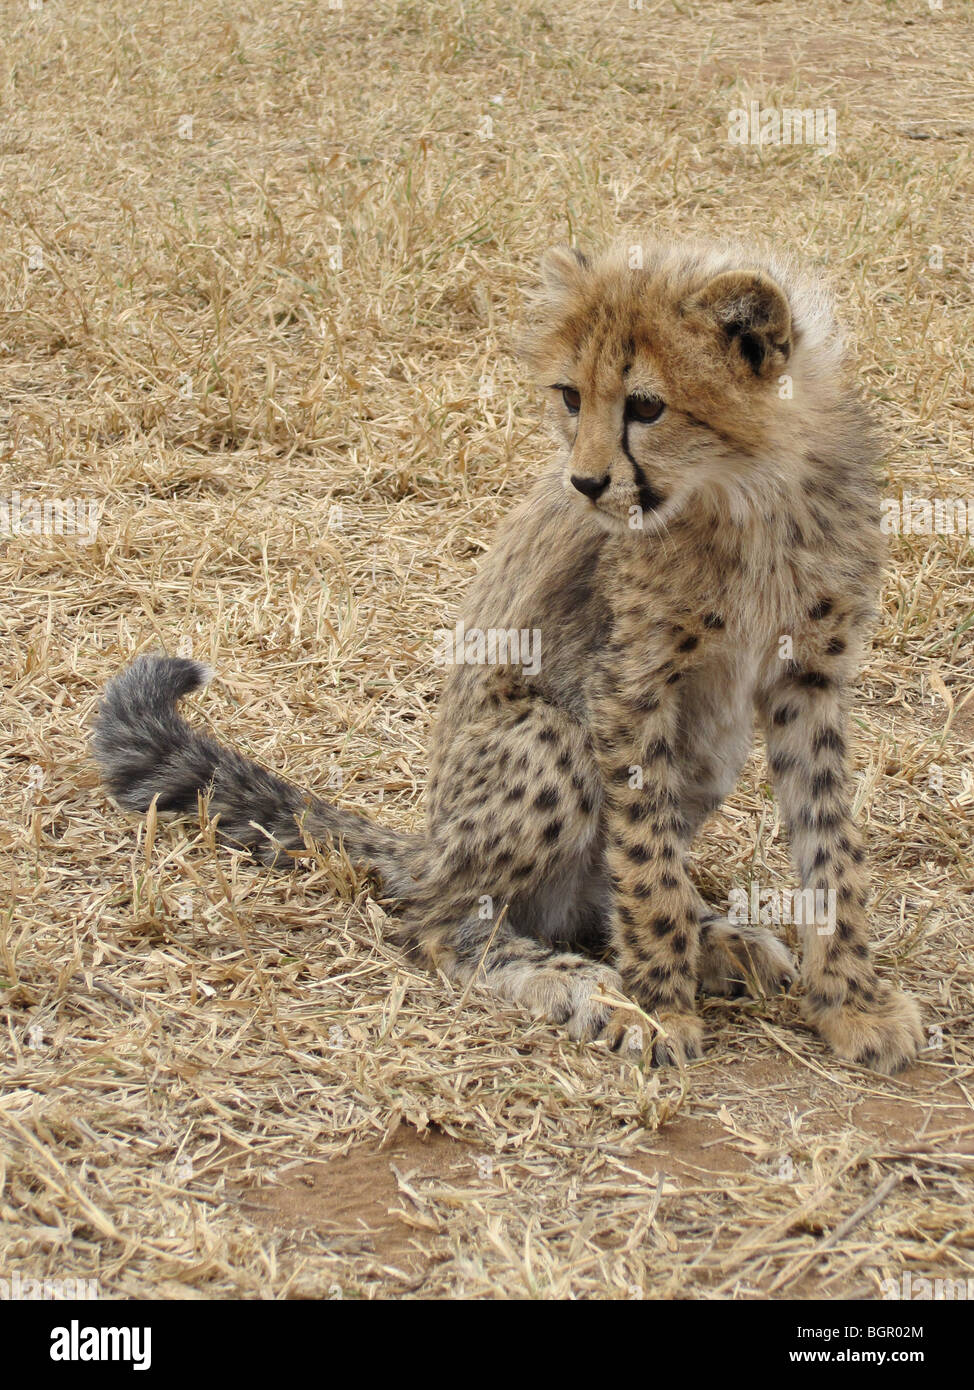 Baby Cheetah Stock Photo